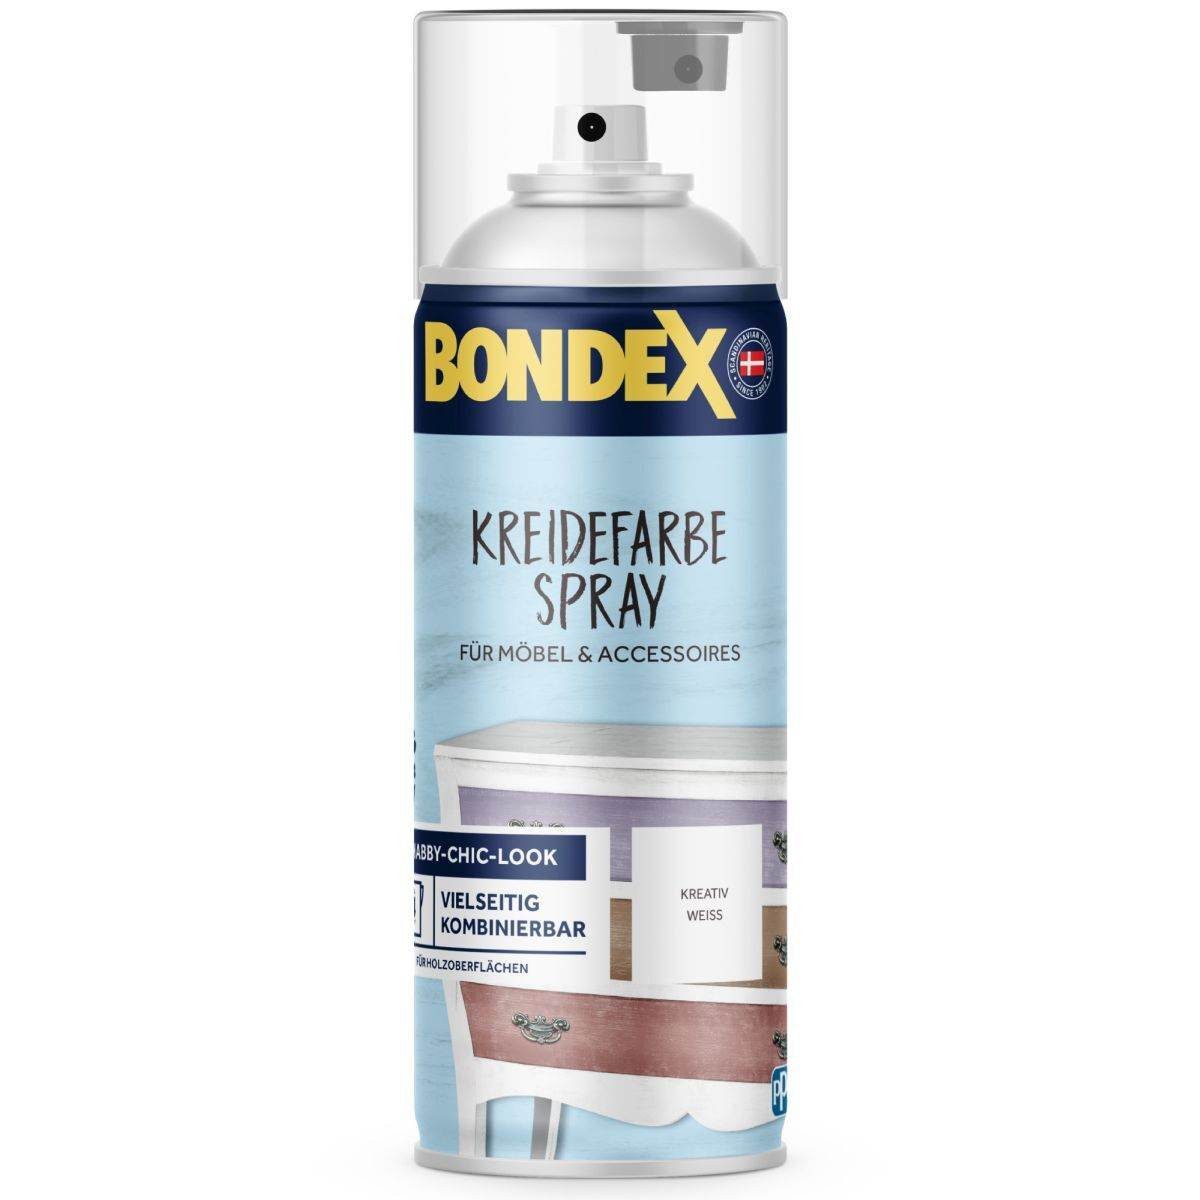 Bondex Kreidefarbe Spray in verschiedenen Farben 0,4l